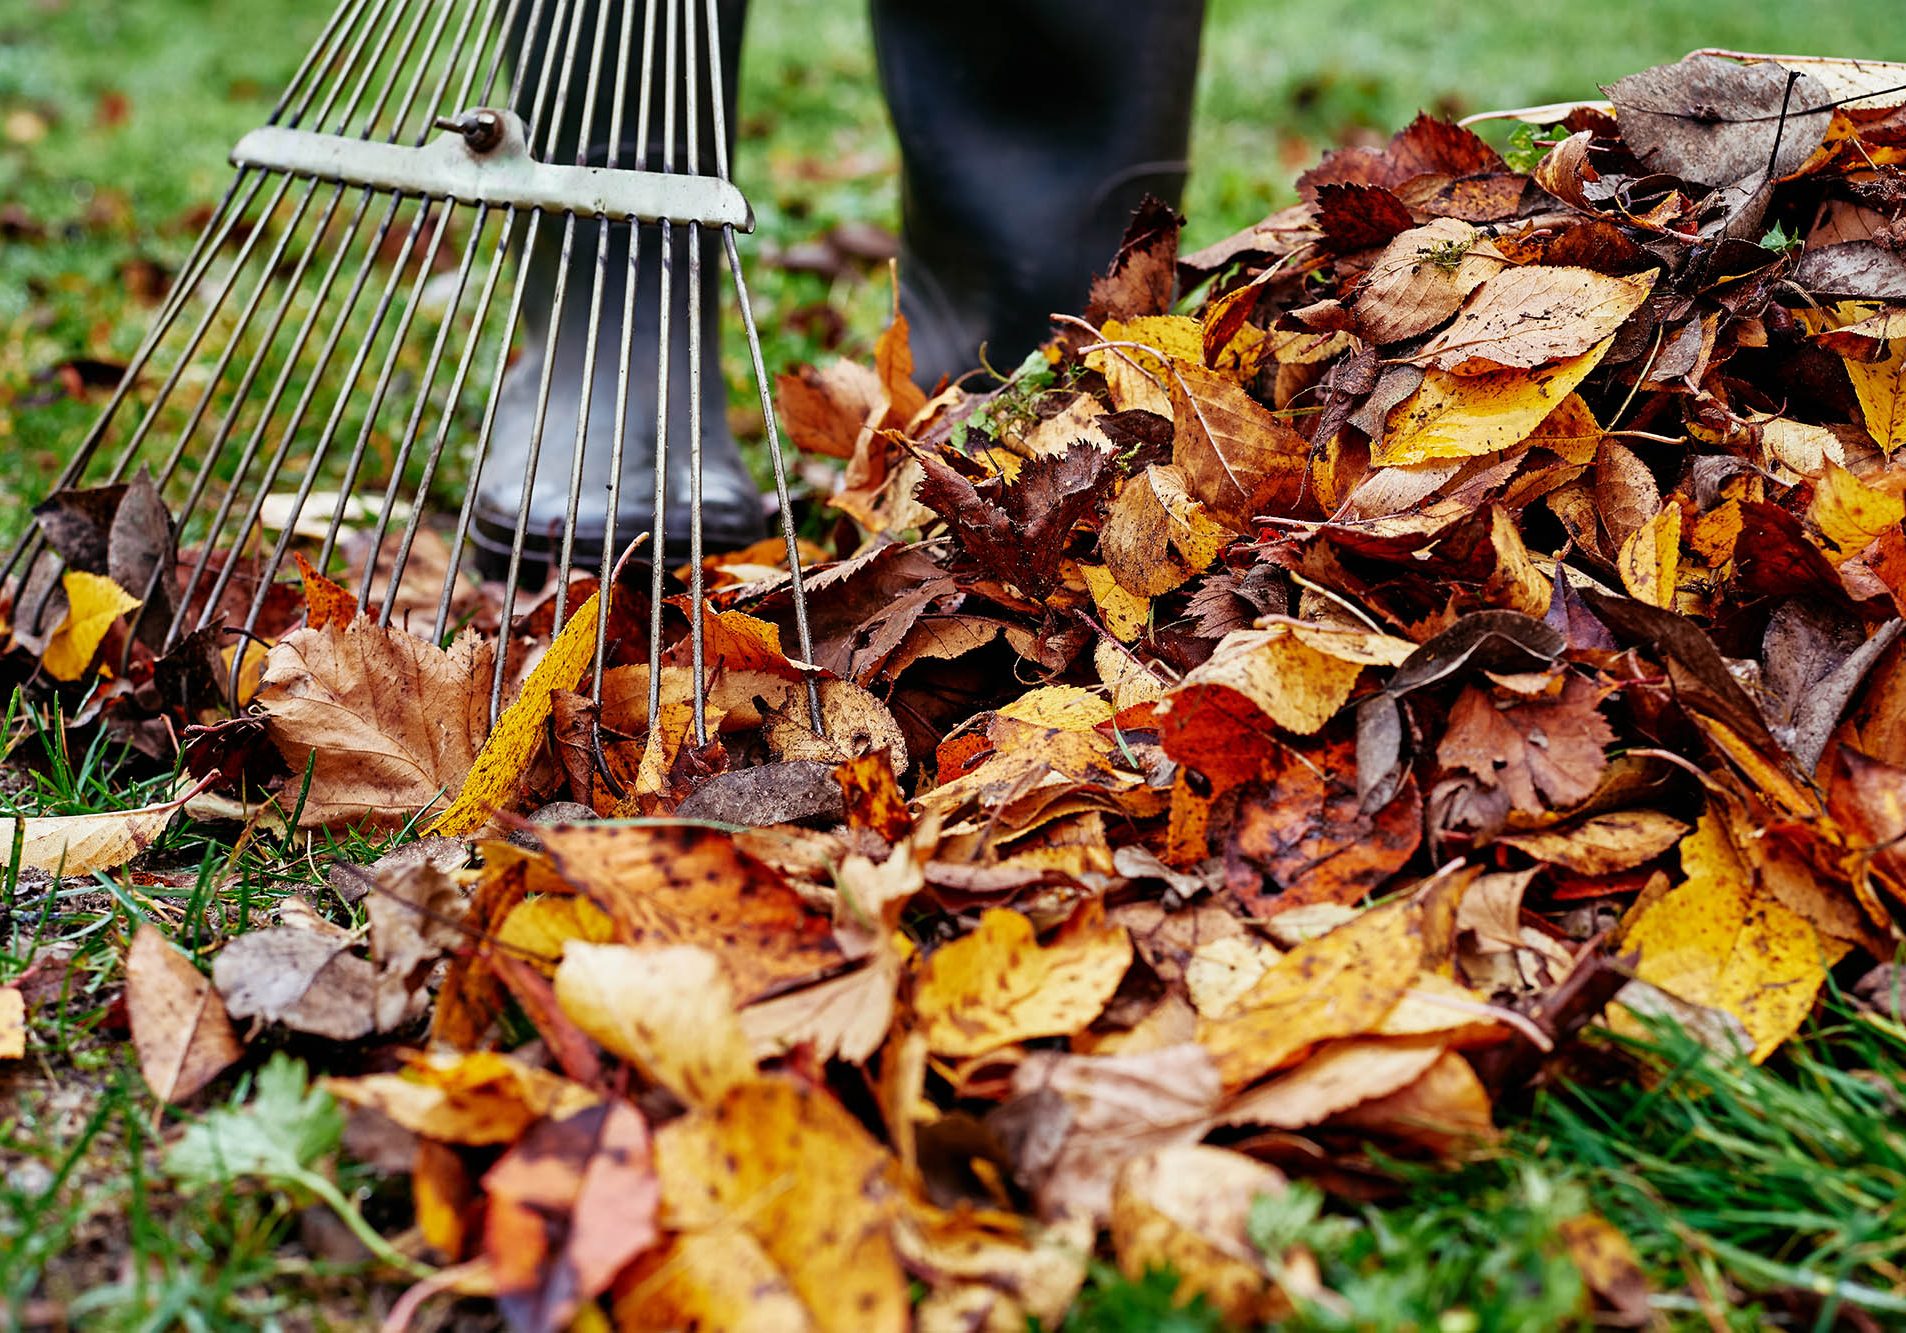 Woman raking pile of fall leaves at garden with rake. Autumn yard work